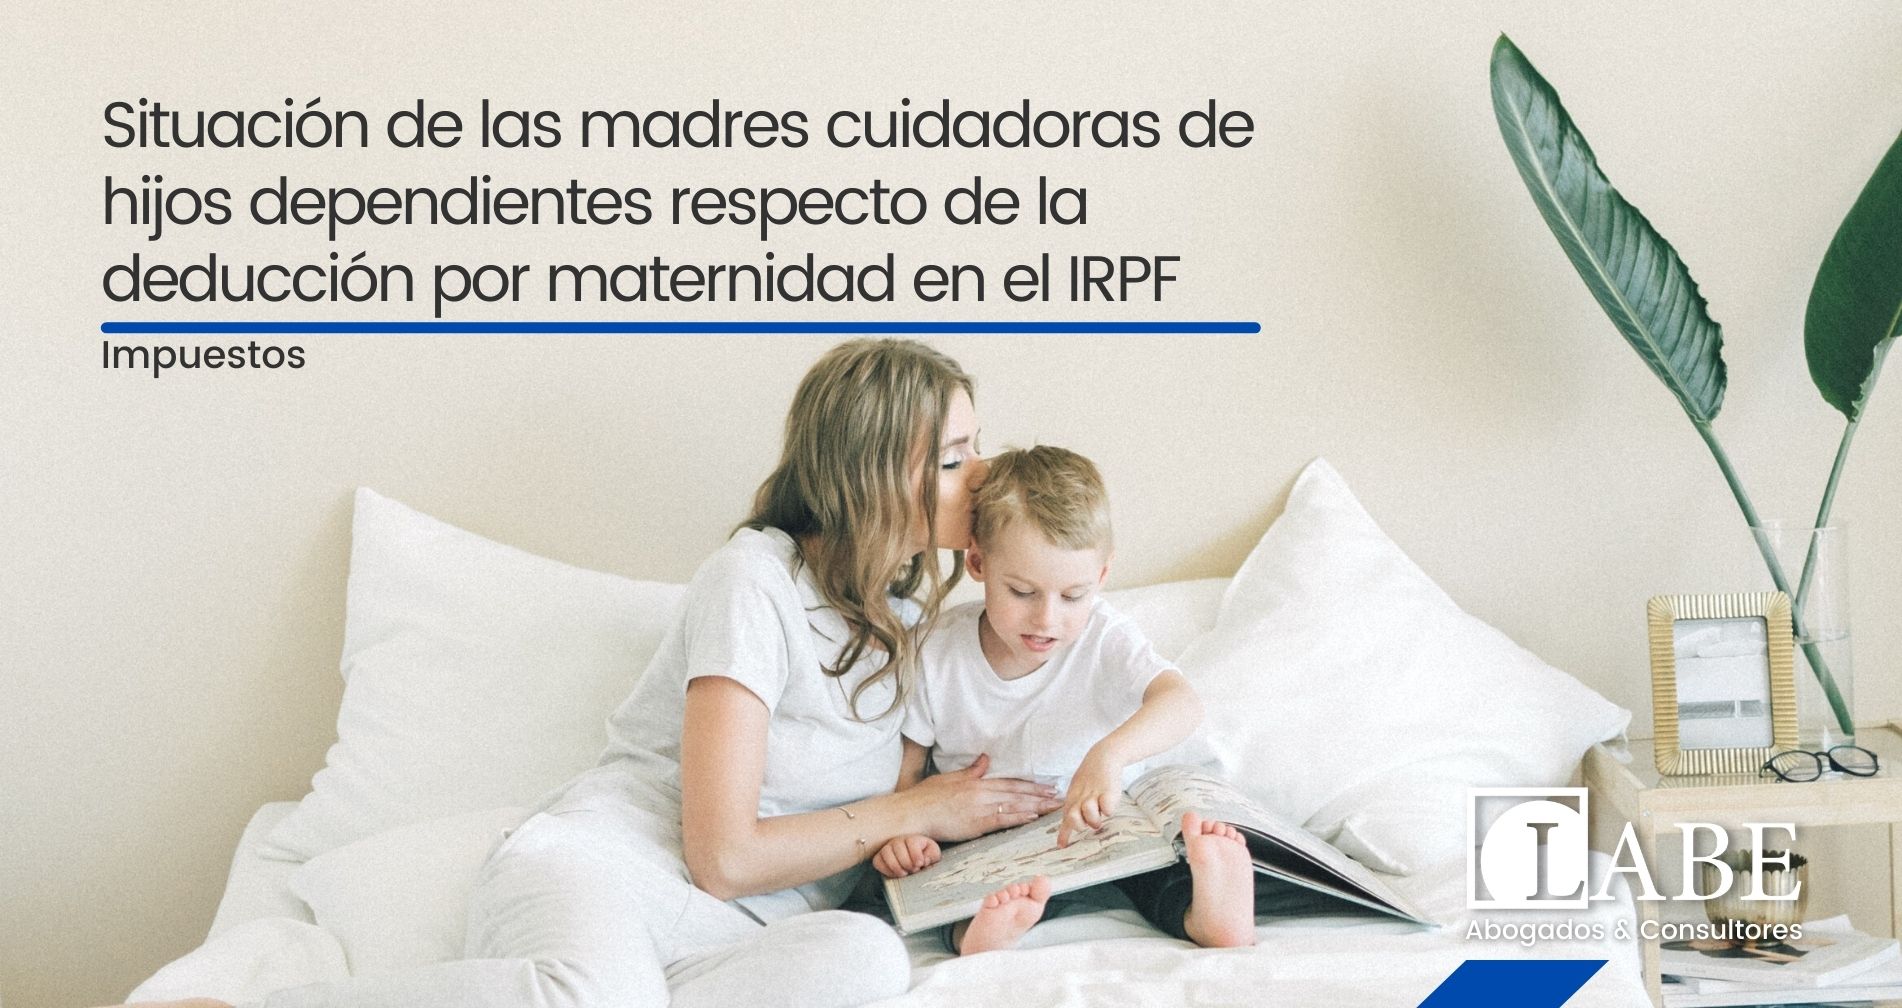 Situación de las madres cuidadoras de hijos dependientes respecto de la deducción por maternidad en el IRPF